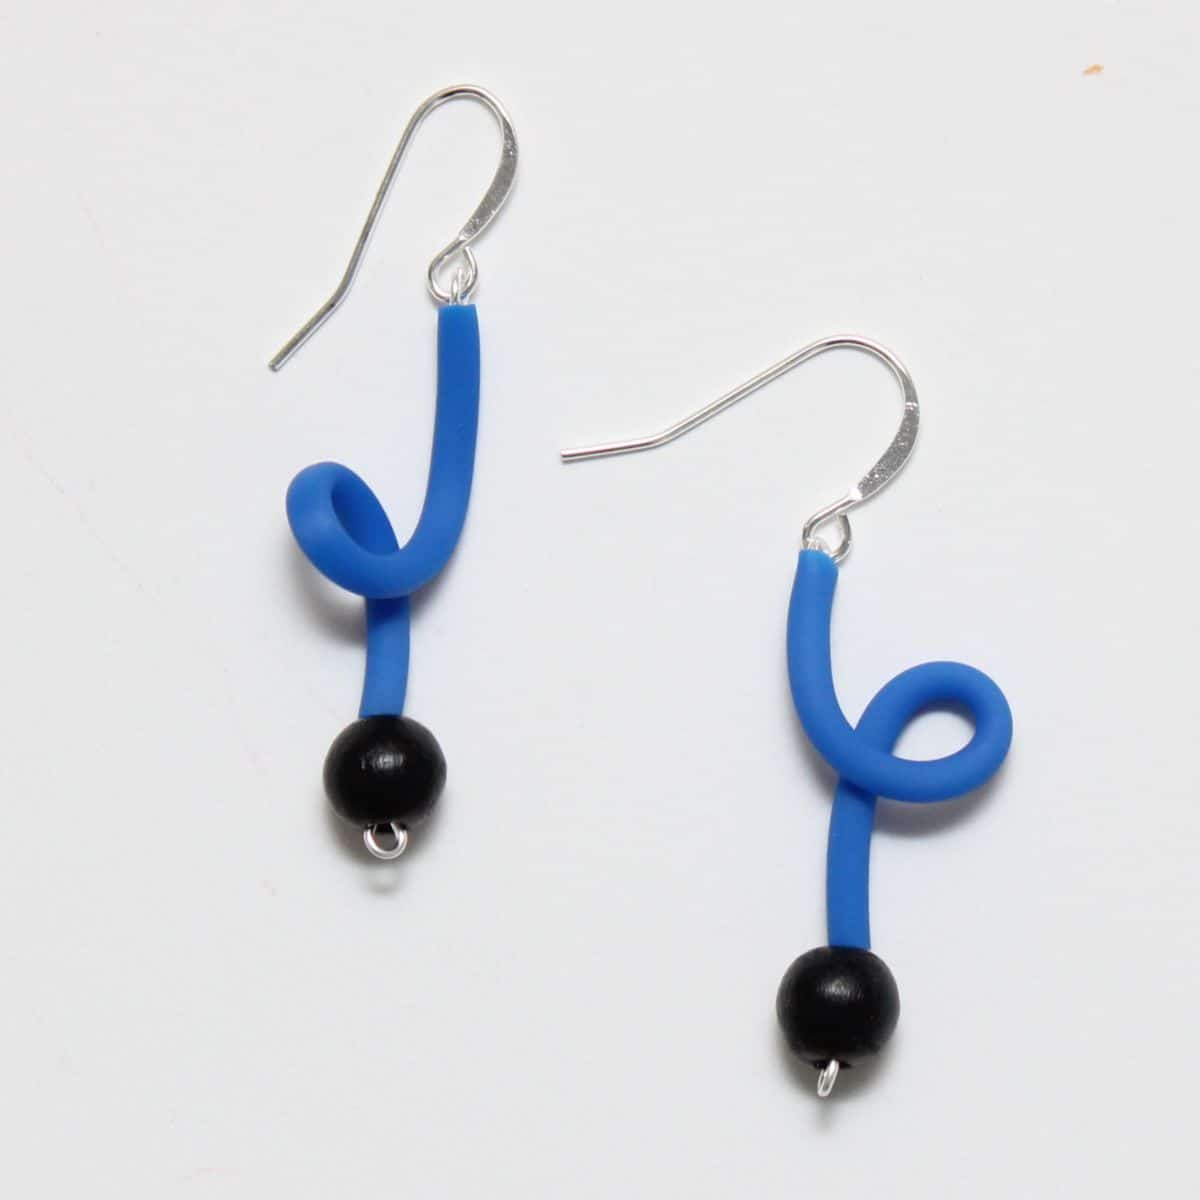 Blue rubber tube earrings